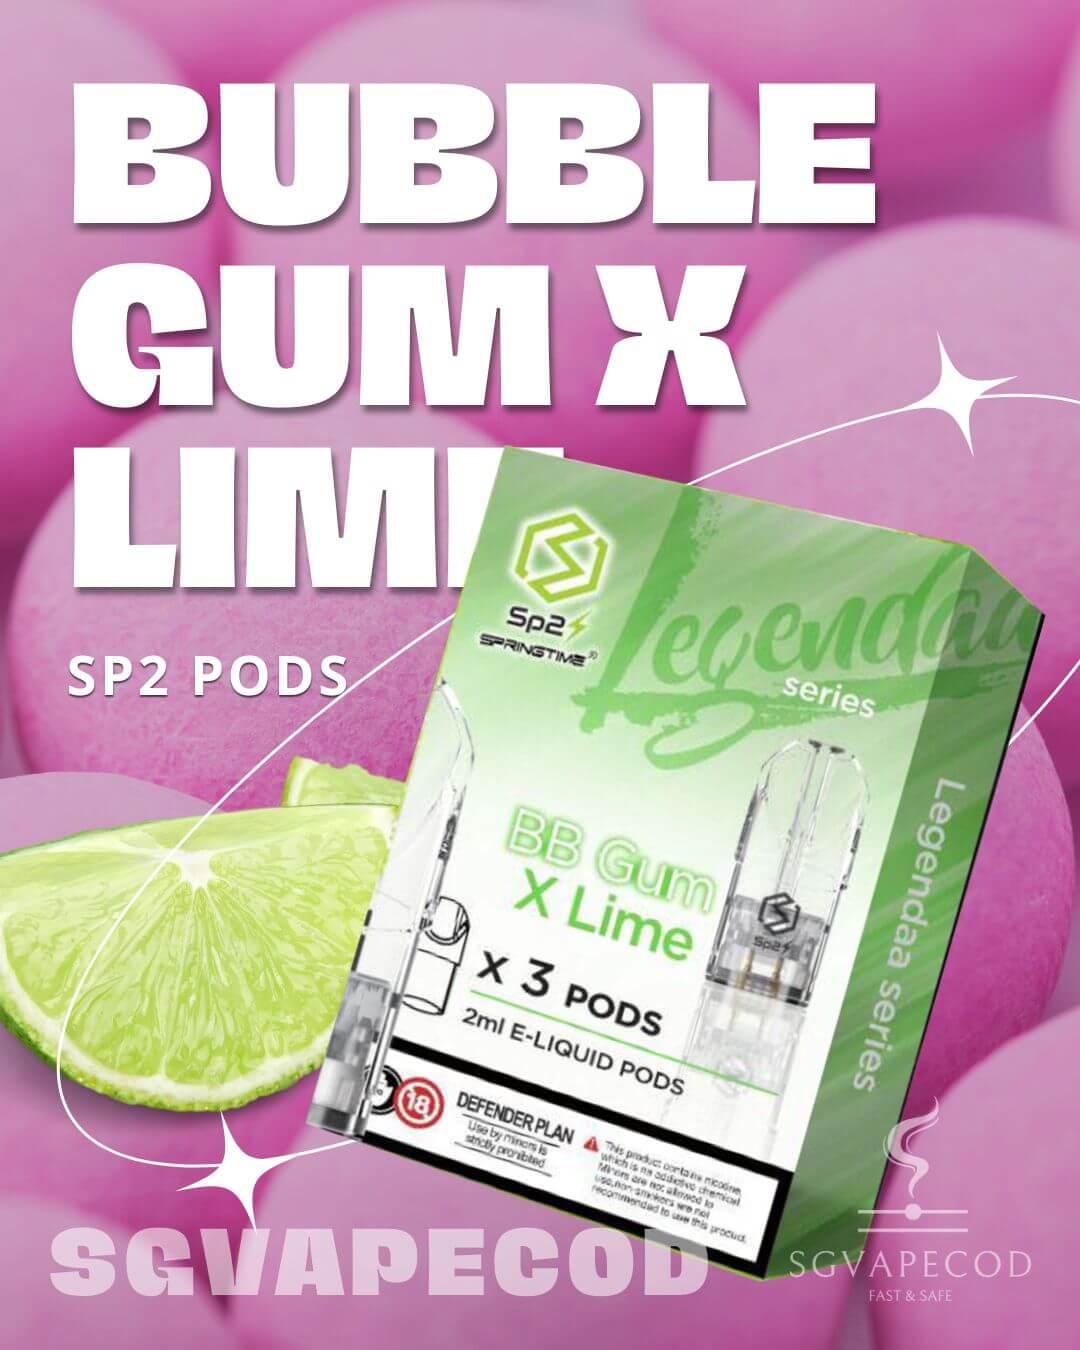 Sp2-Pod-Bubblegum-Lime-(SG VAPE COD)